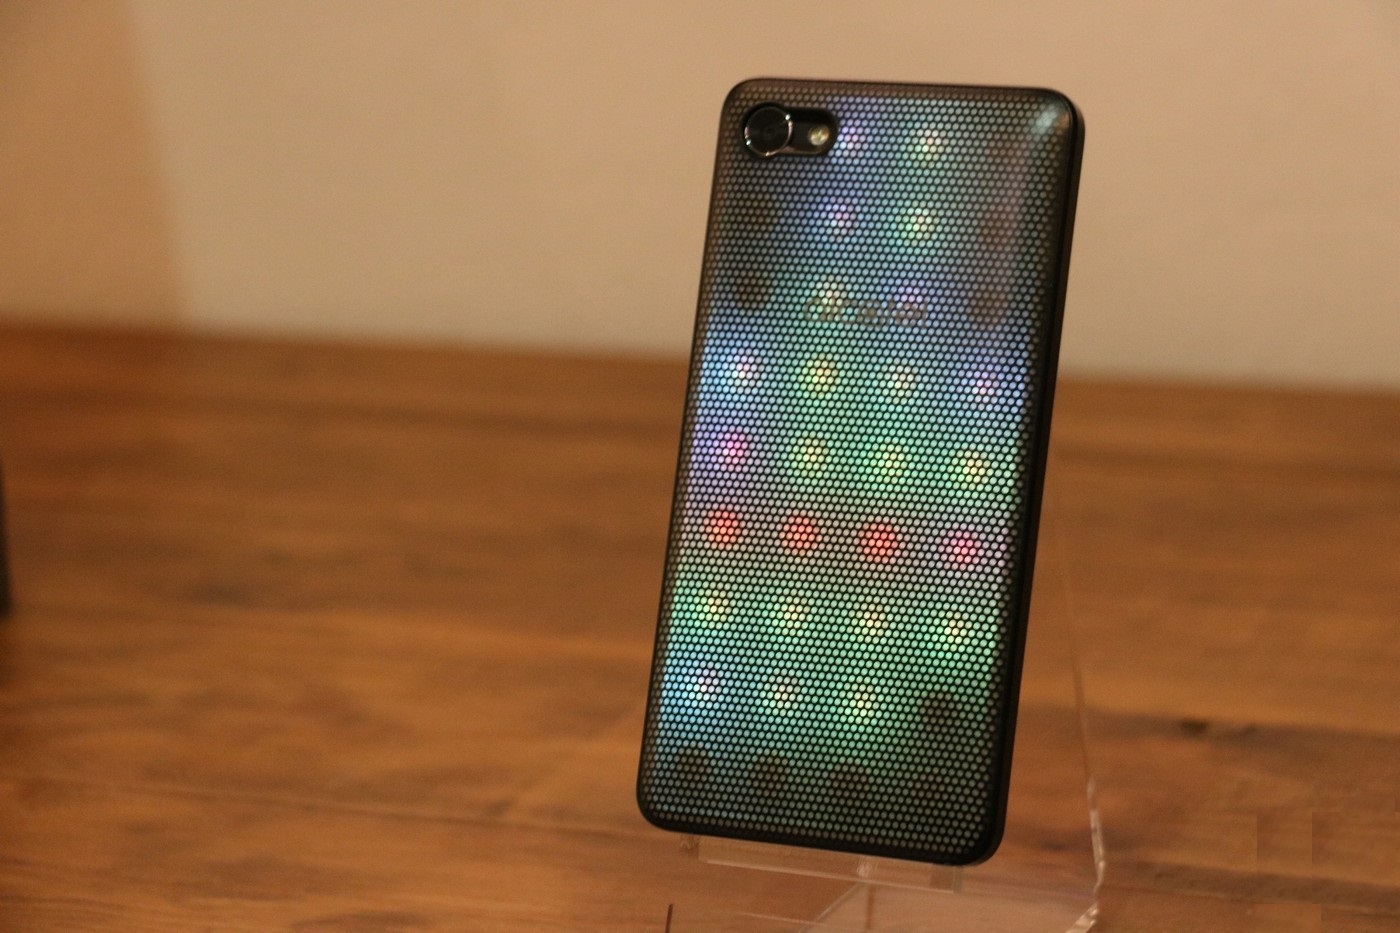 Смартфон Alcatel A5 LED оснащен светодиодной иллюминацией